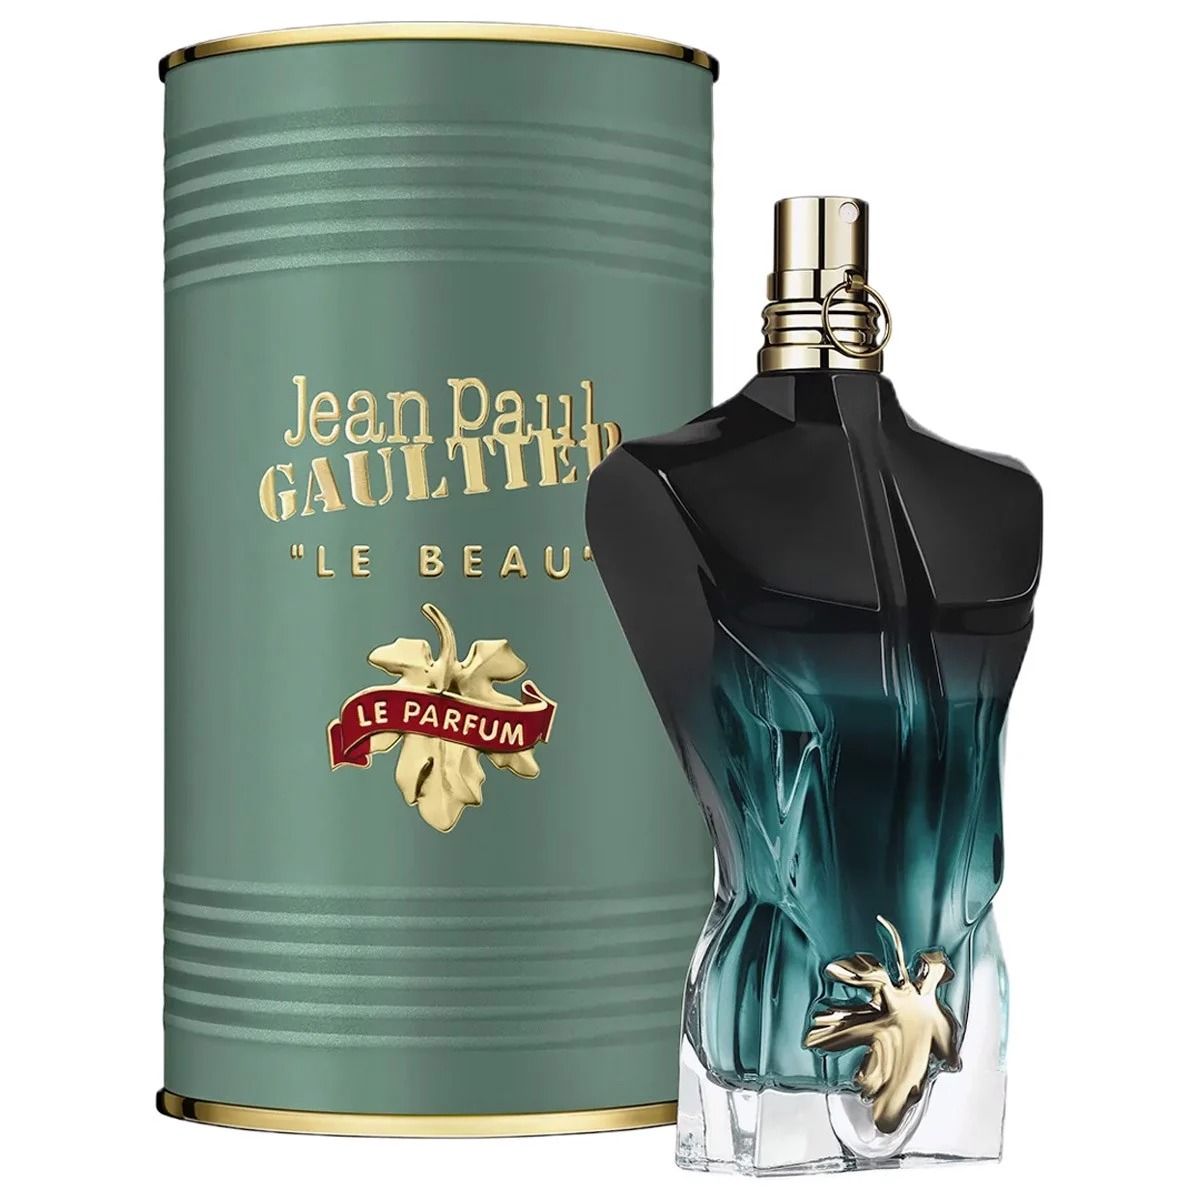  Jean Paul Gaultier Le Beau le parfume 